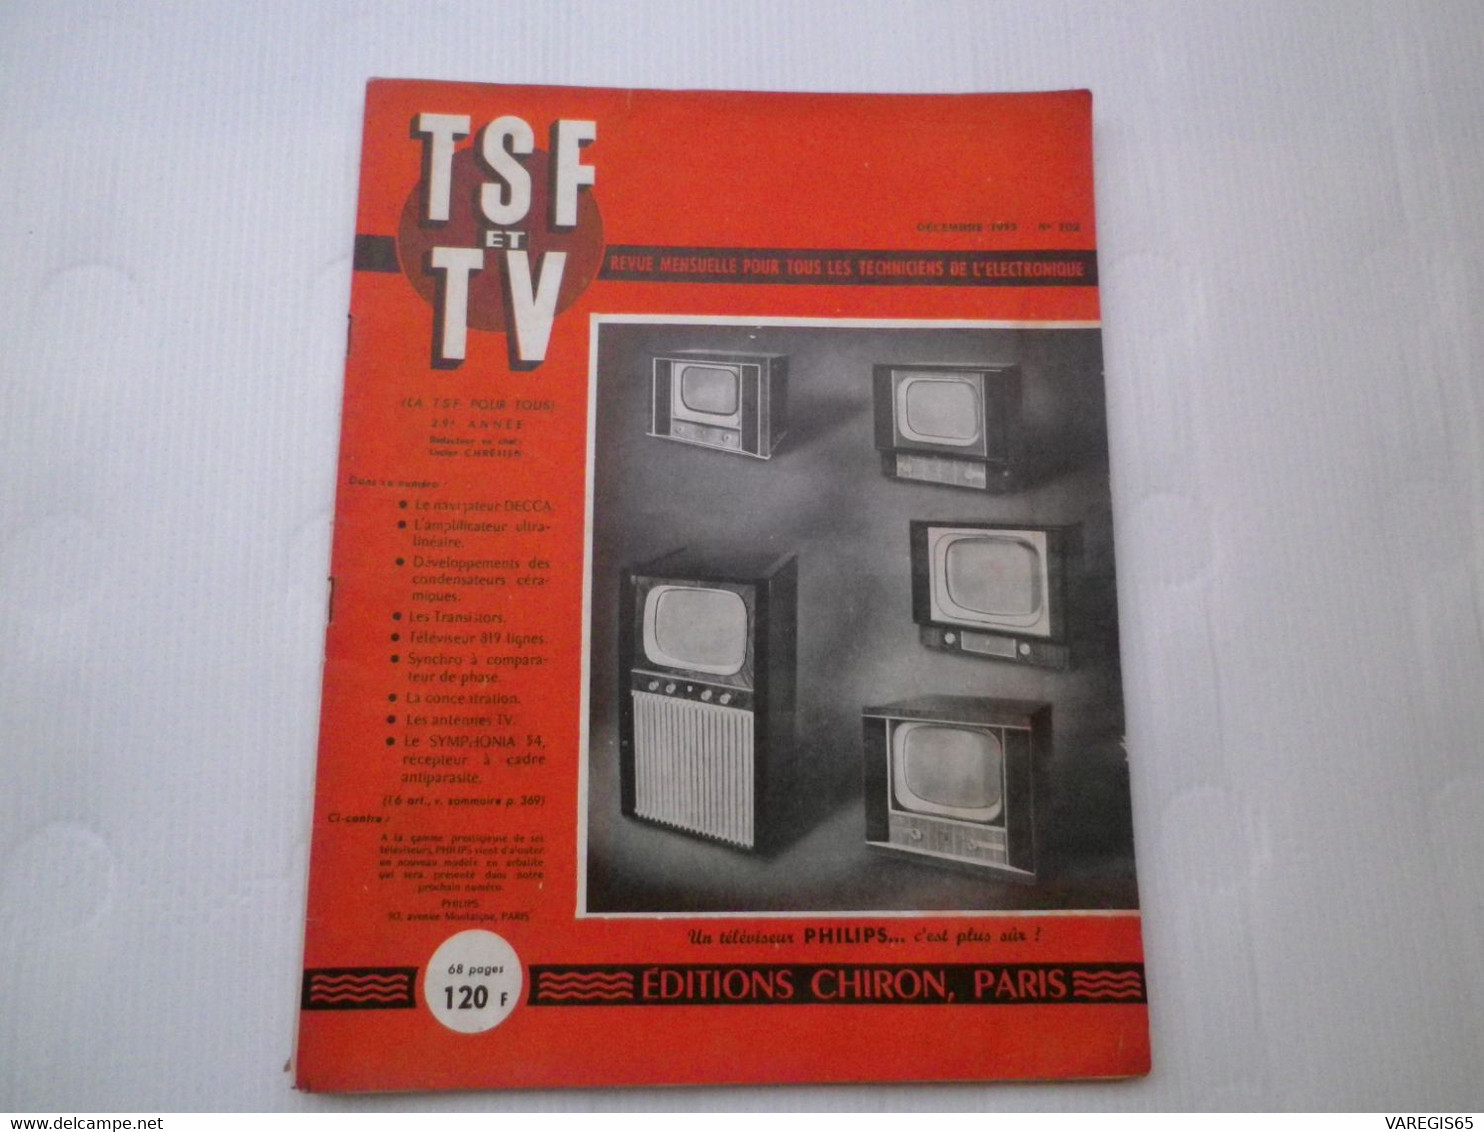 TSF ET TV - N° 302 DECEMBRE 1953 - REVUE MENSUELLE - ETUDE DU SYMPHONIA 54 ET DU RECEPTEUR DE TELEVISION OCEANIC 819 - Audio-Visual